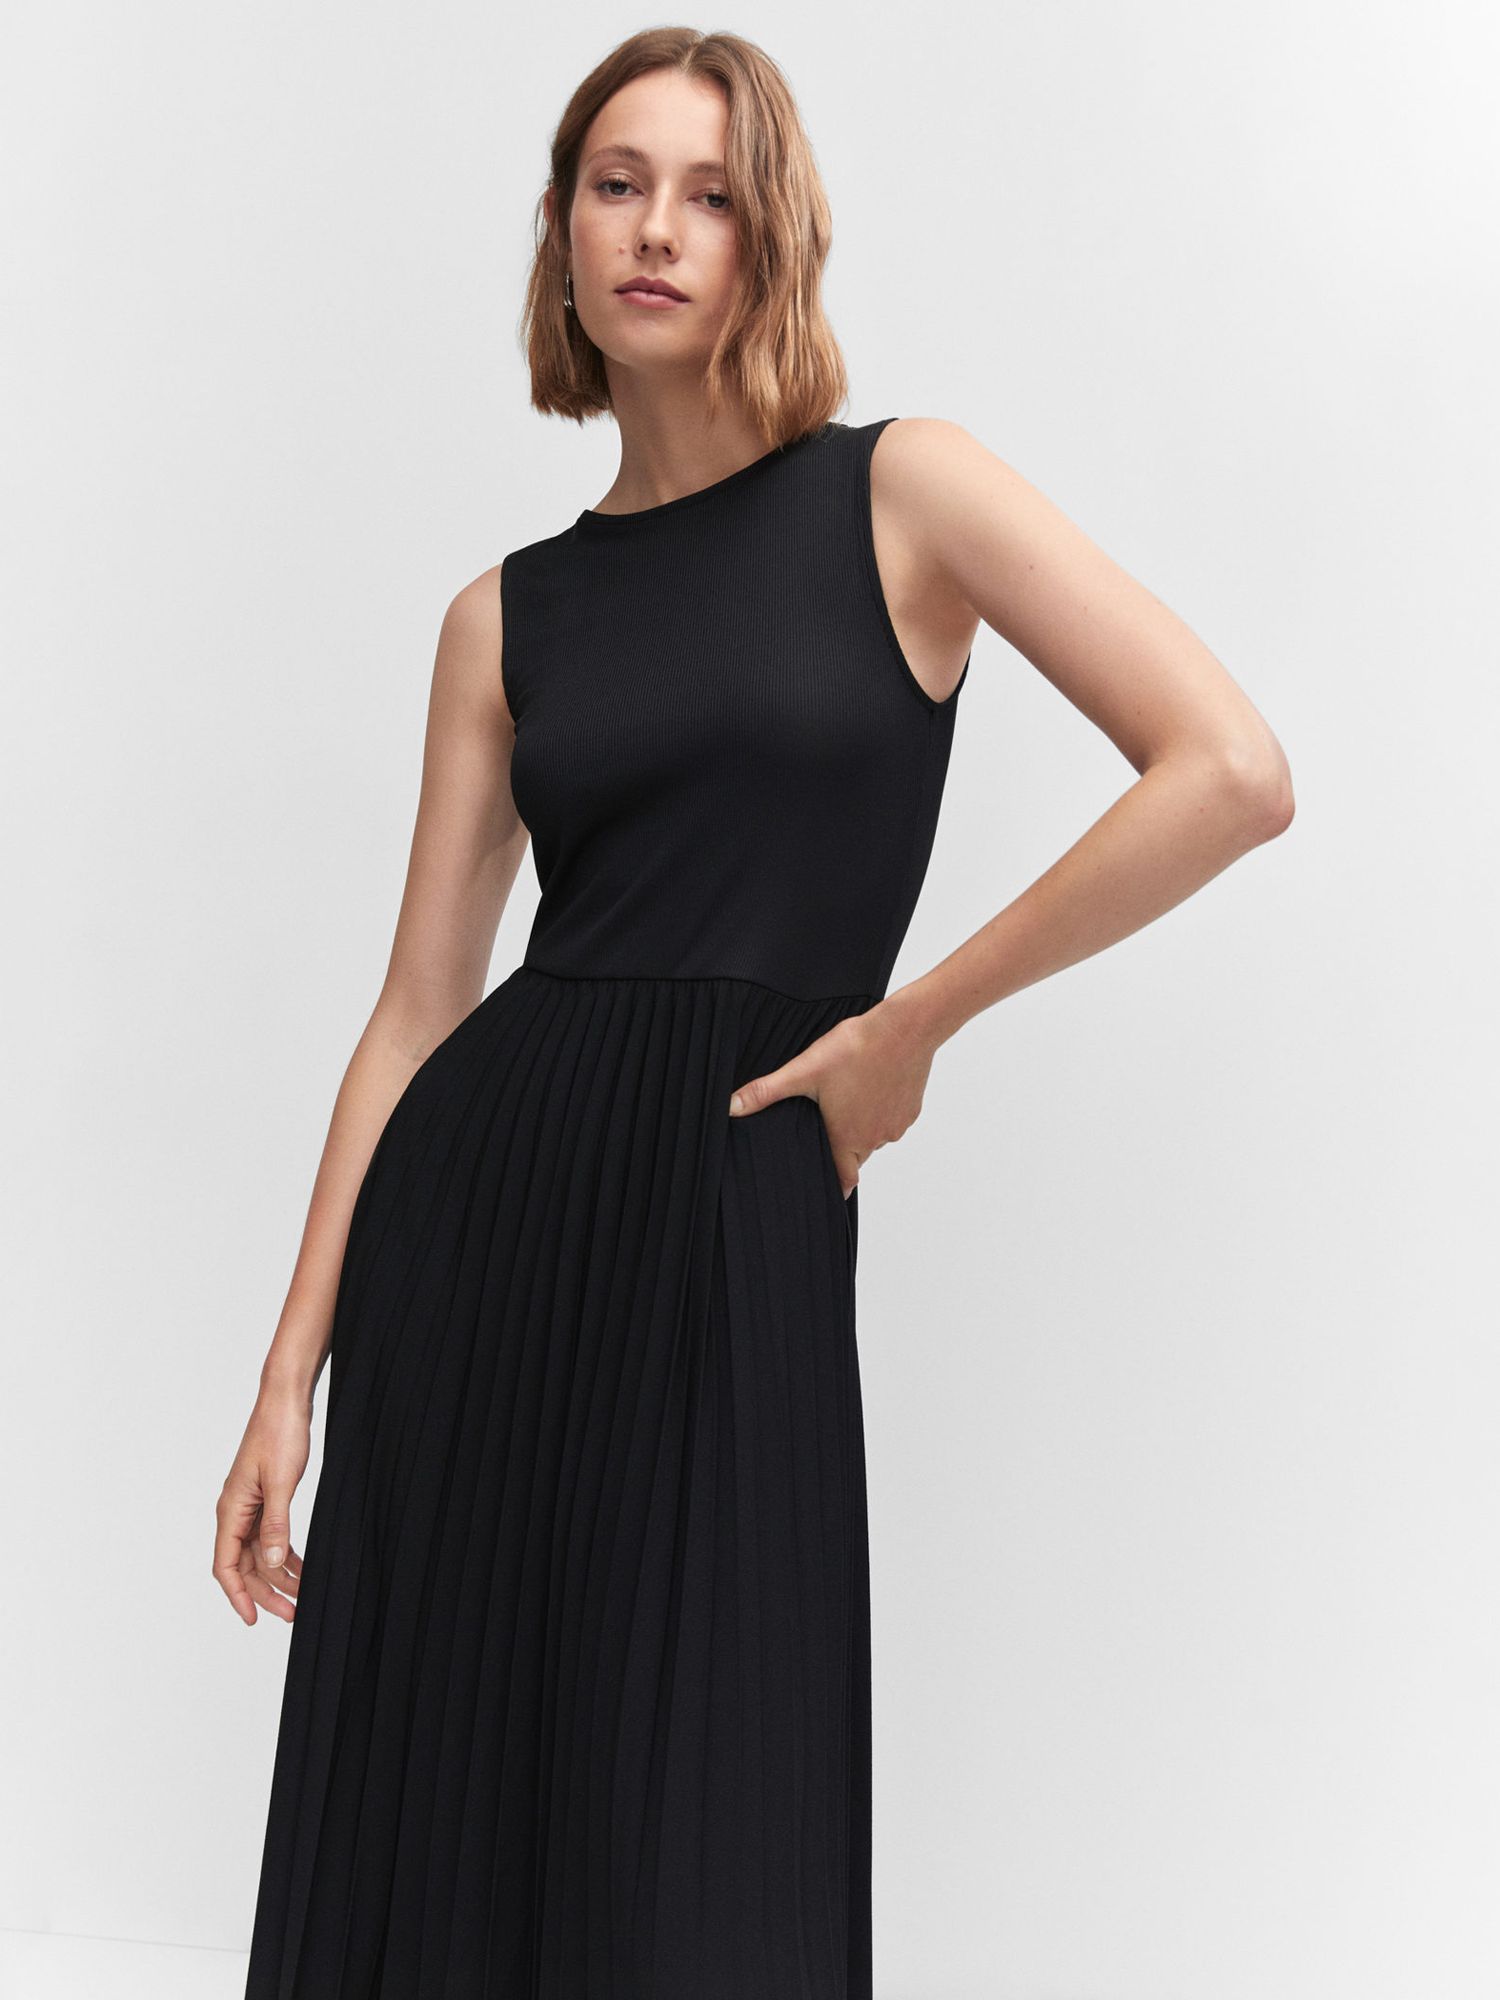 Mango Calderaa Plain Pleat Dress, Black at John Lewis & Partners